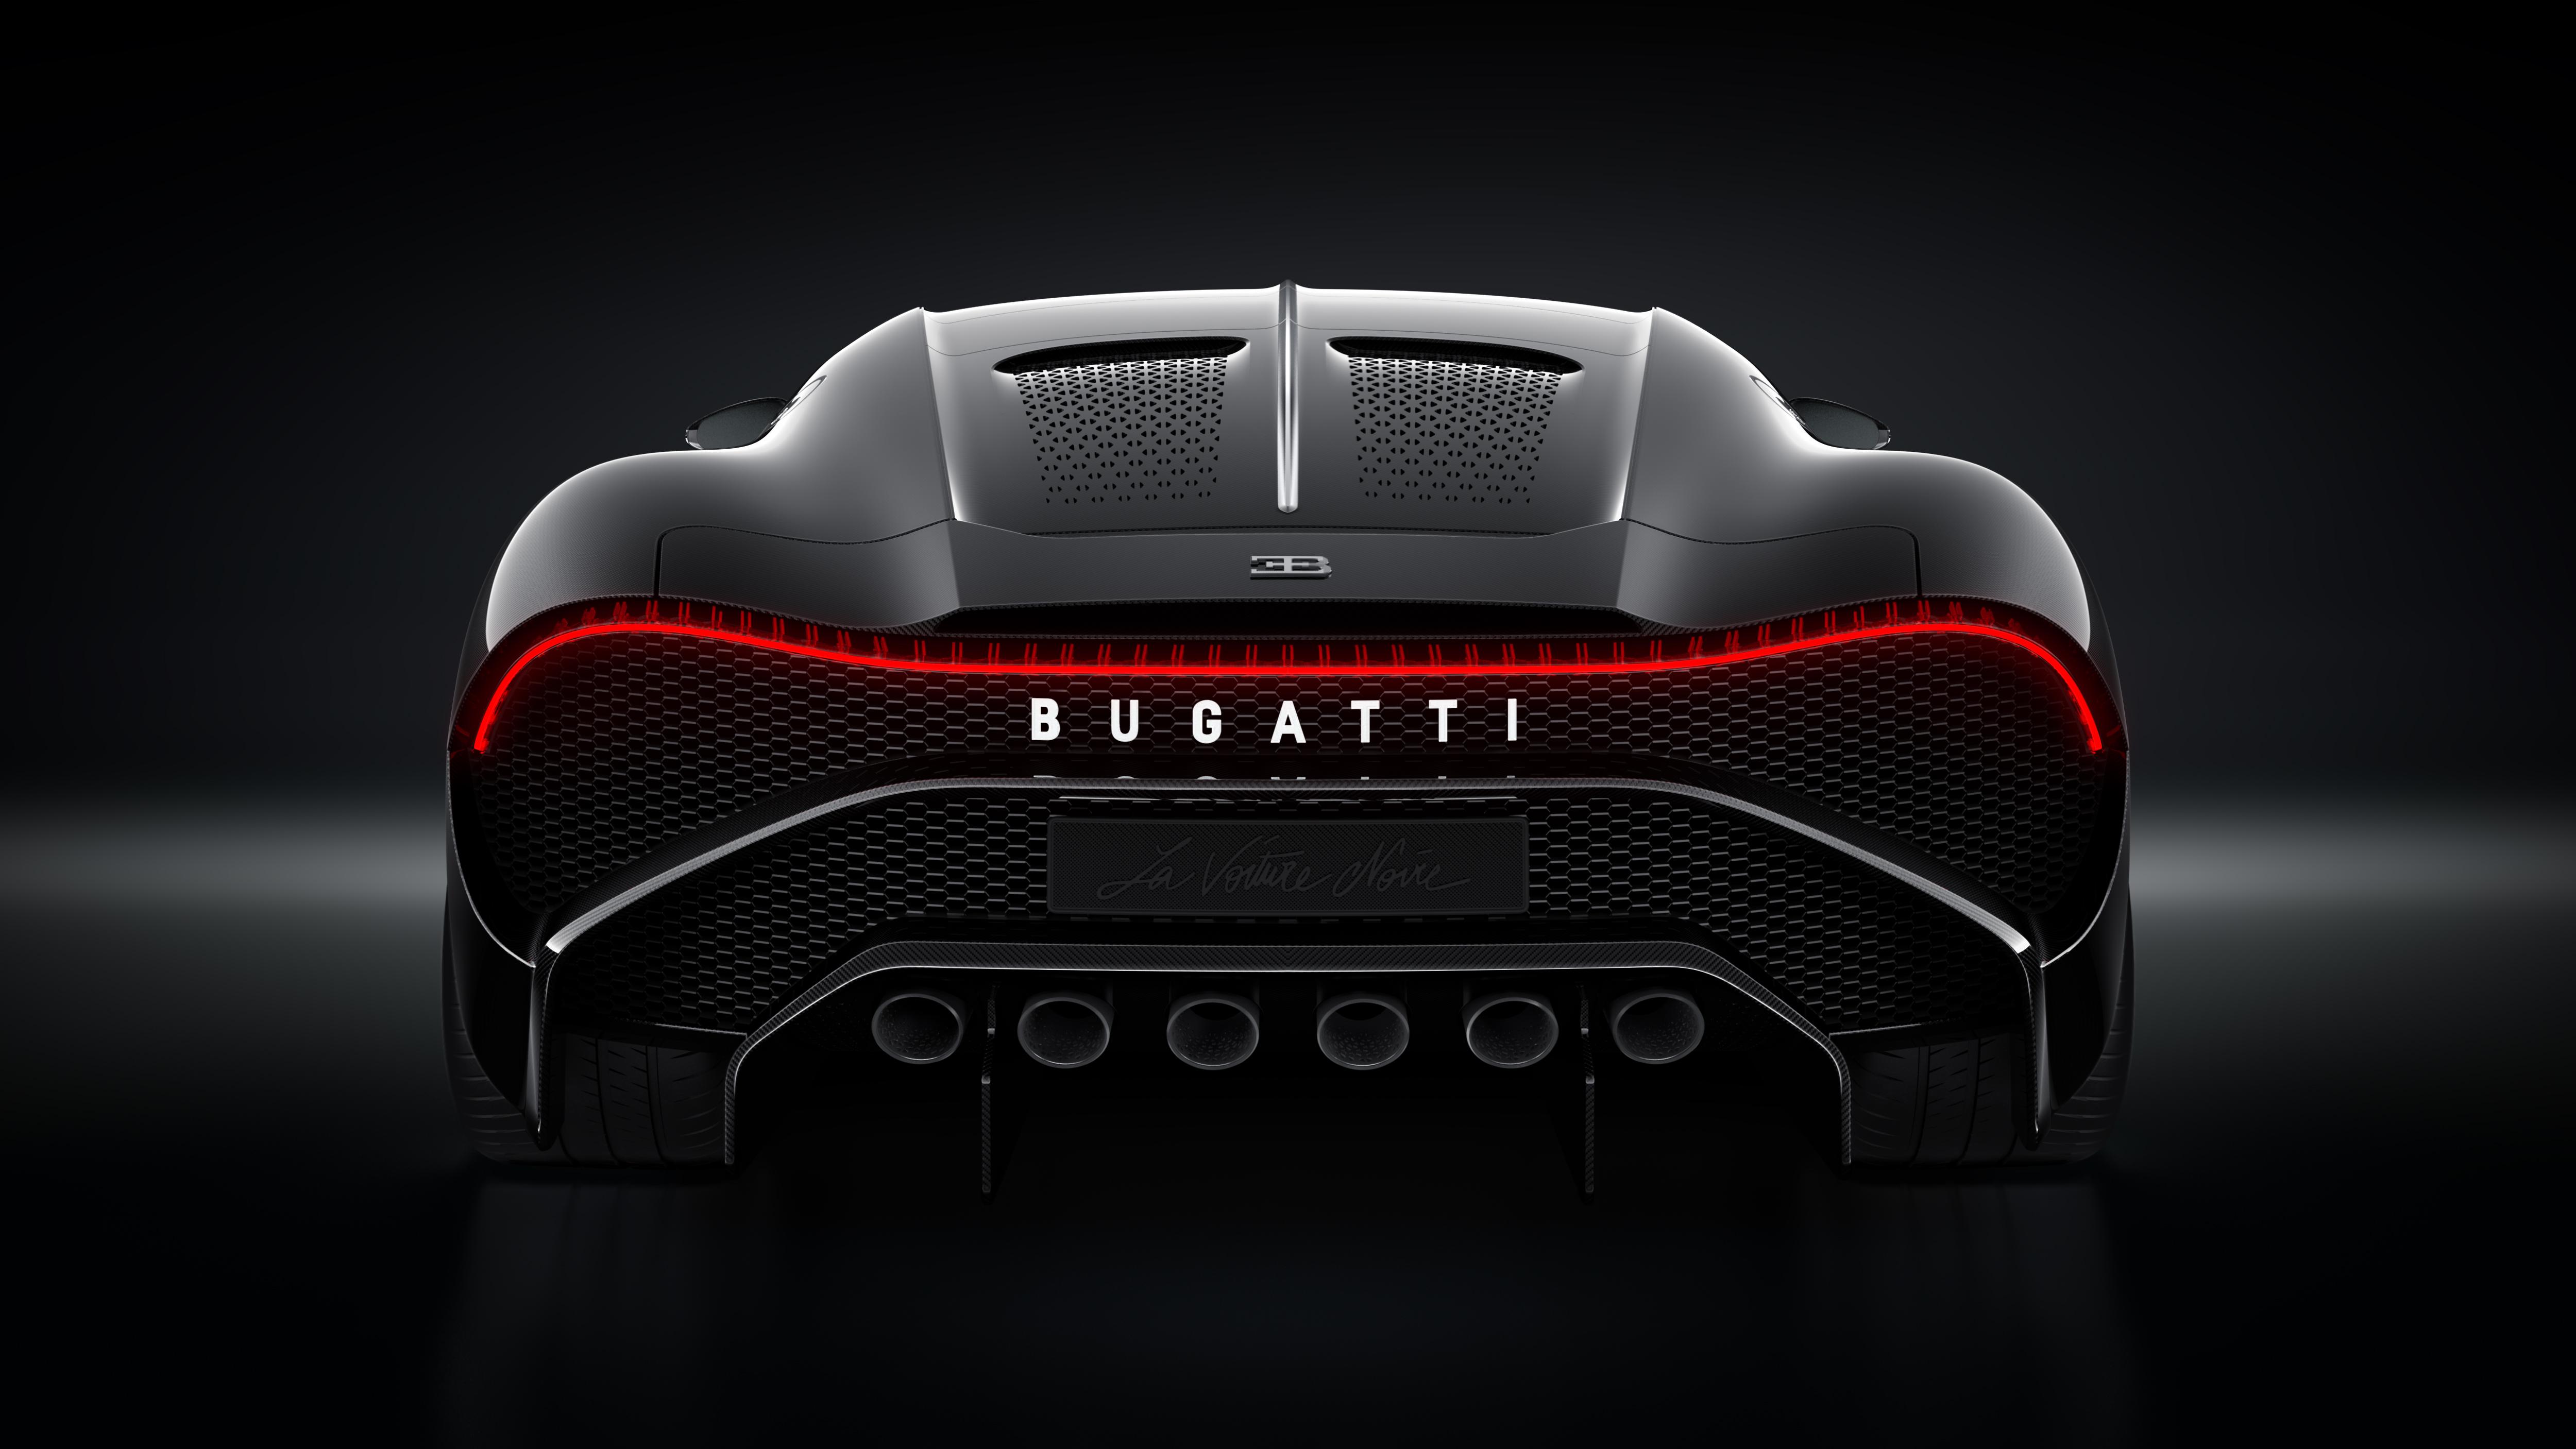 5000 x 2813 · jpeg - Bugatti La Voiture Noire 2019 Rear, HD Cars, 4k Wallpapers, Images ...